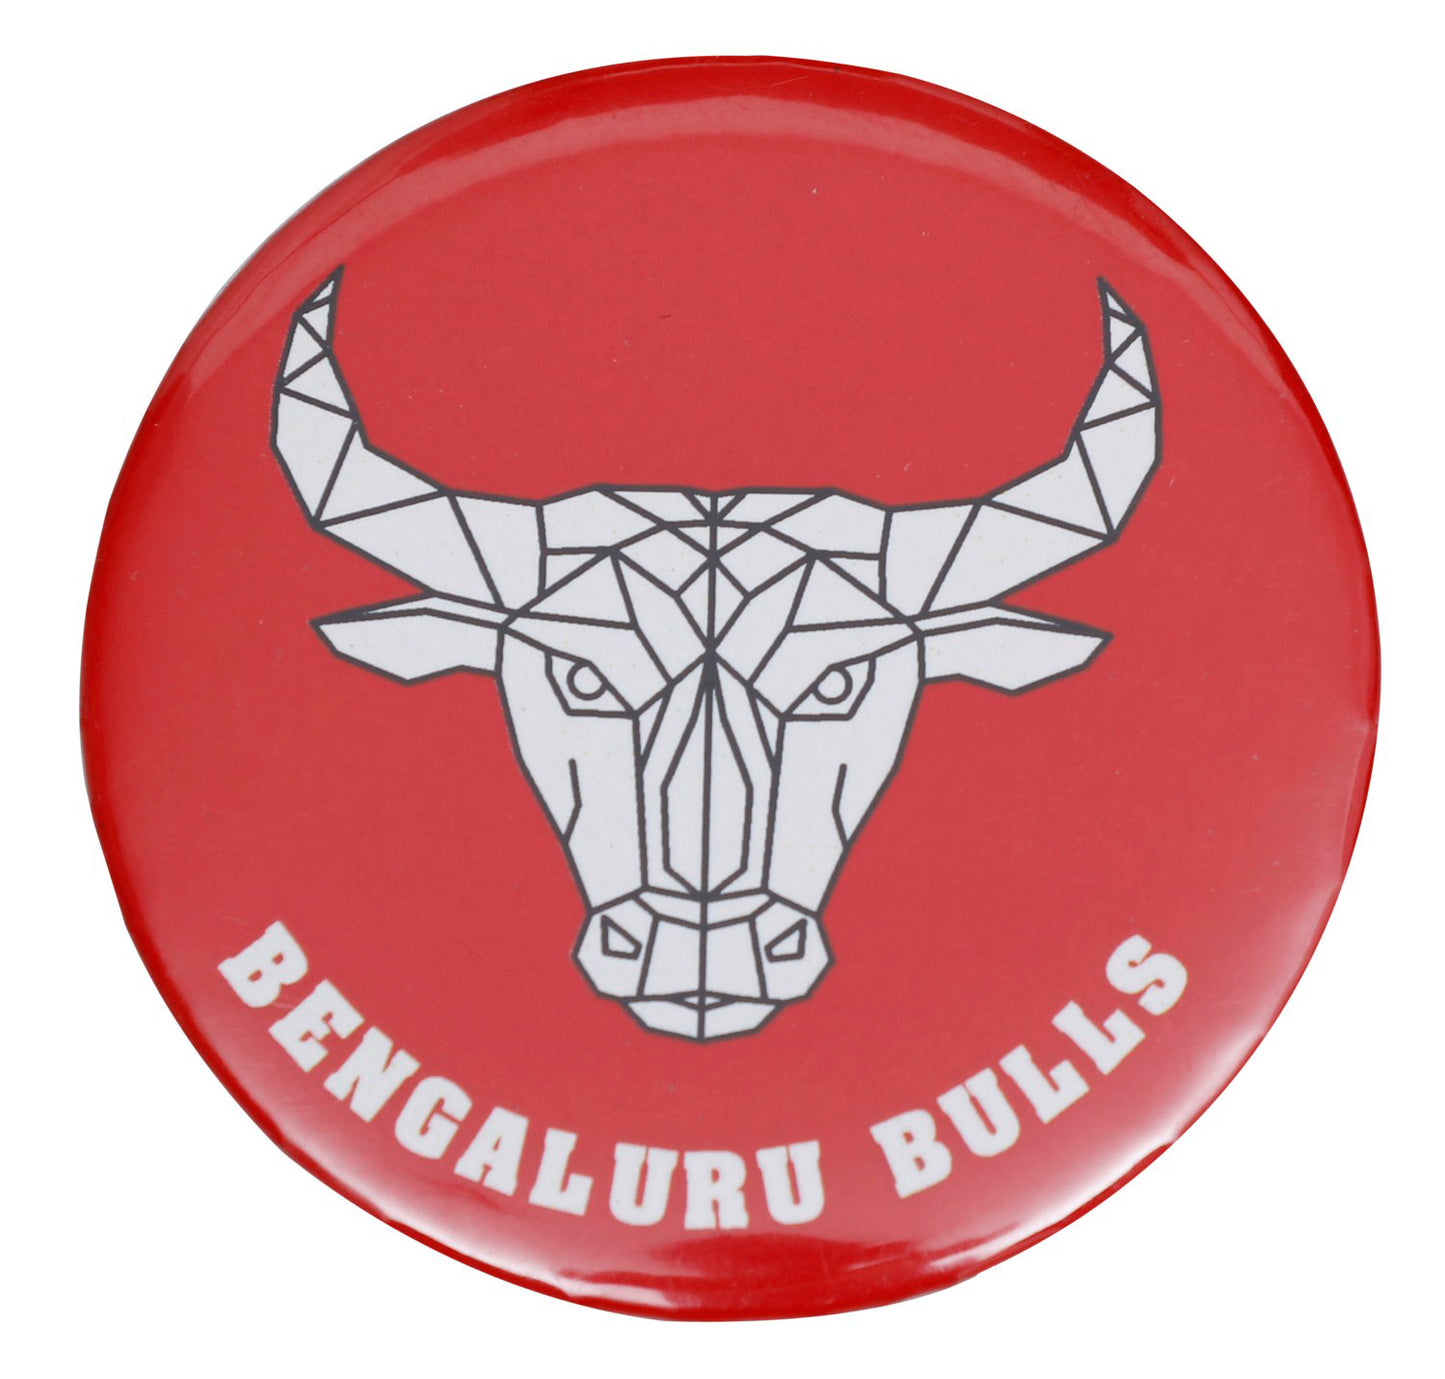 BENGALURU BULLS BRANDED RED PIN BADGE